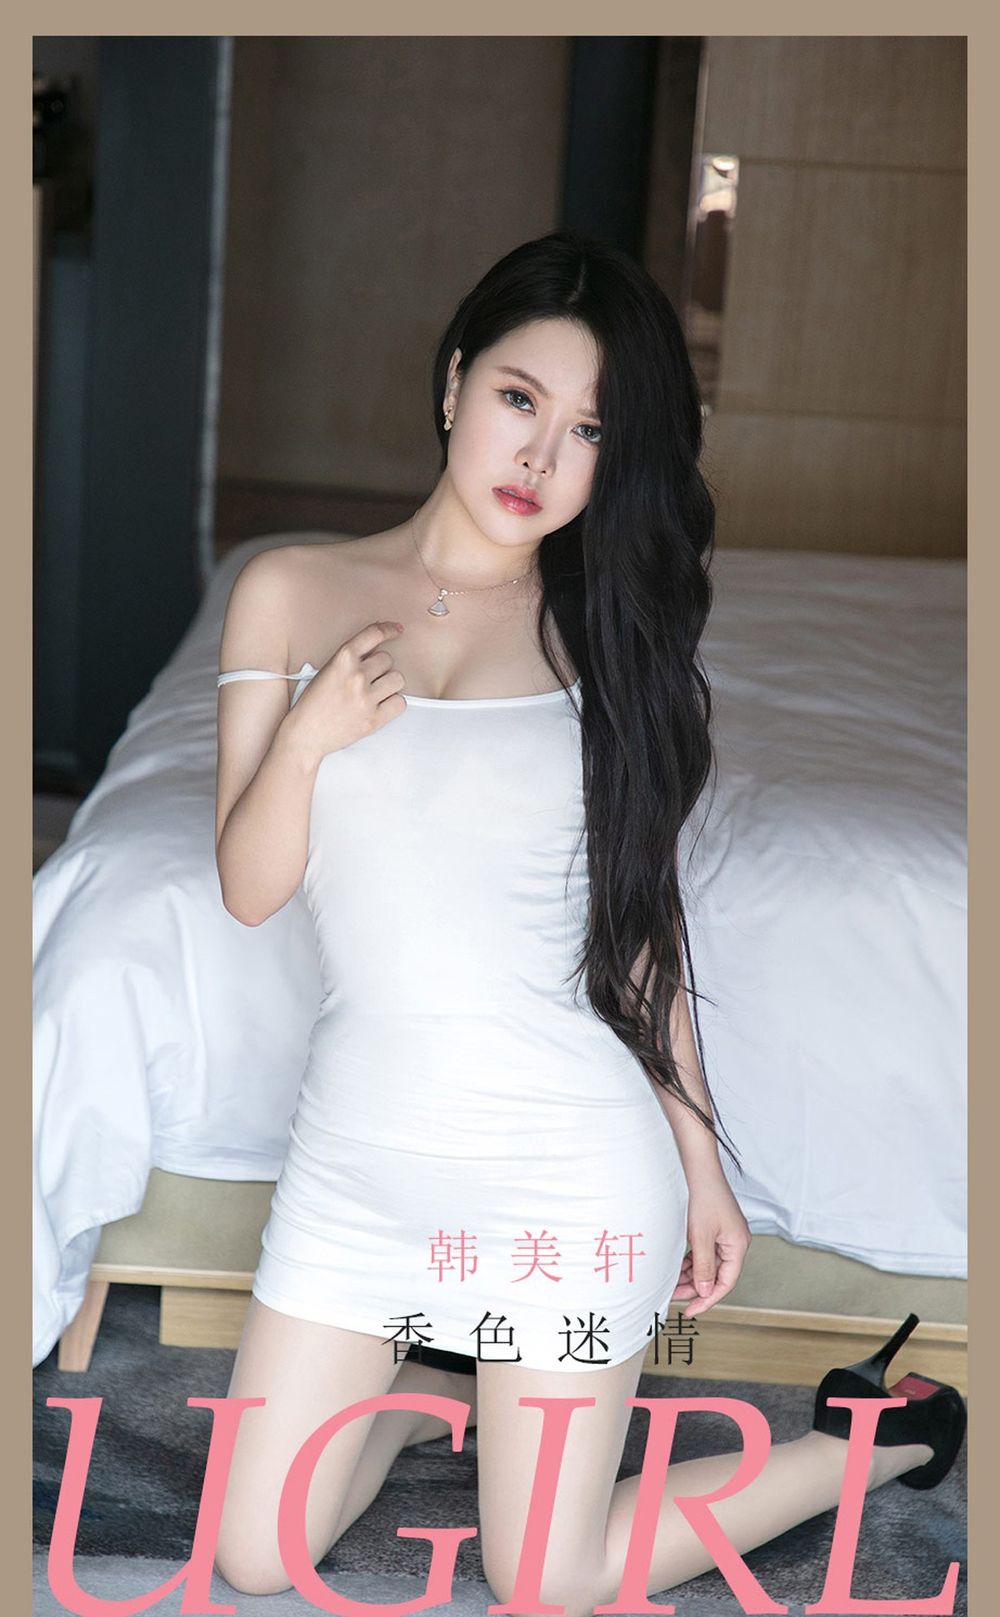 美女模特韩美轩白色连身短裙惊艳好身材迷情写真